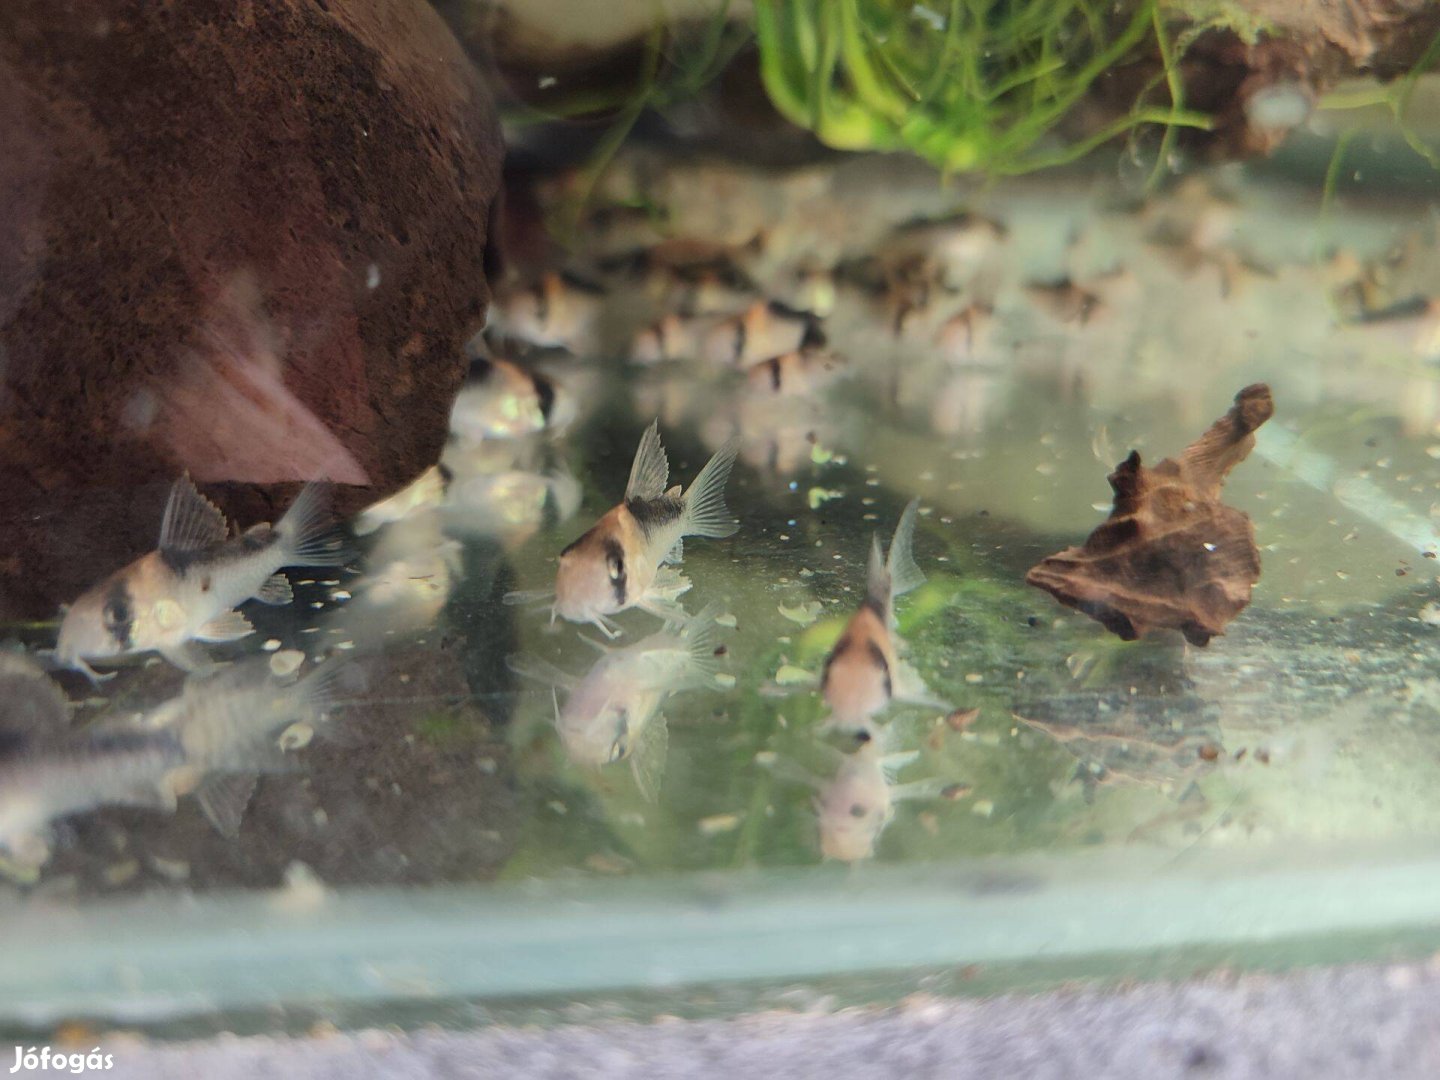 Eladó akváriumi díszhal, páncélosharcsa - Corydoras duplicareus